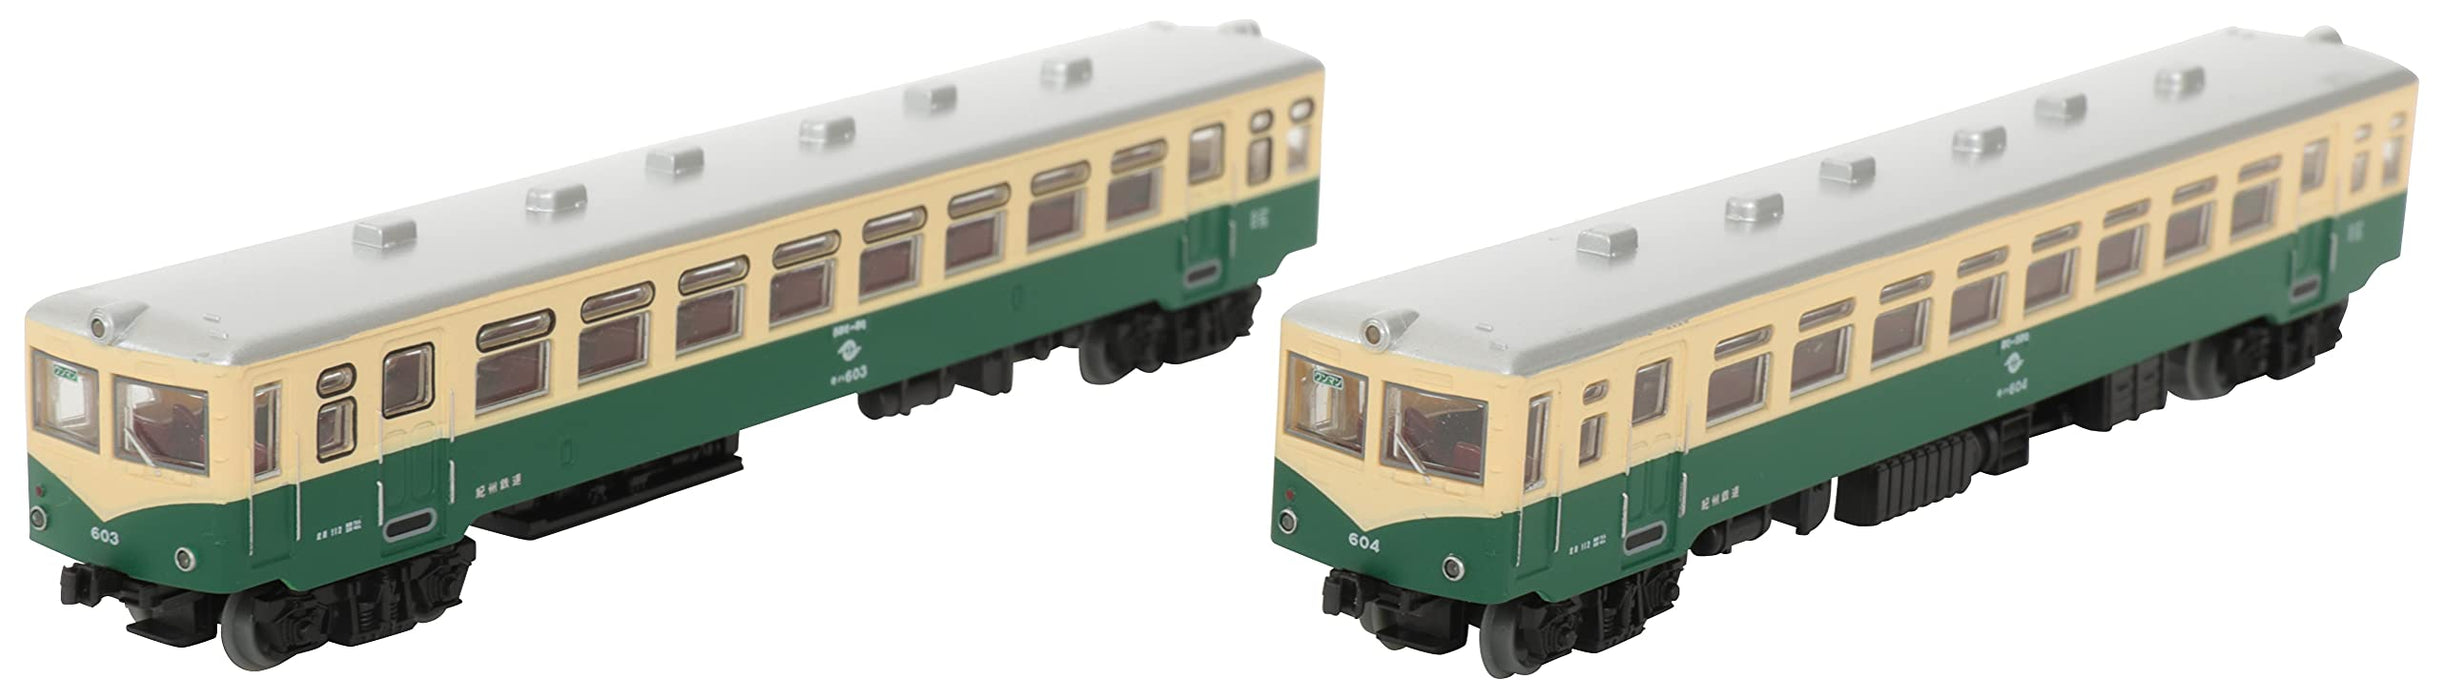 Tomytec Railway Collection Iron Kishu Kiha 600 Ensemble de 2 voitures modèle récent Diorama 317890